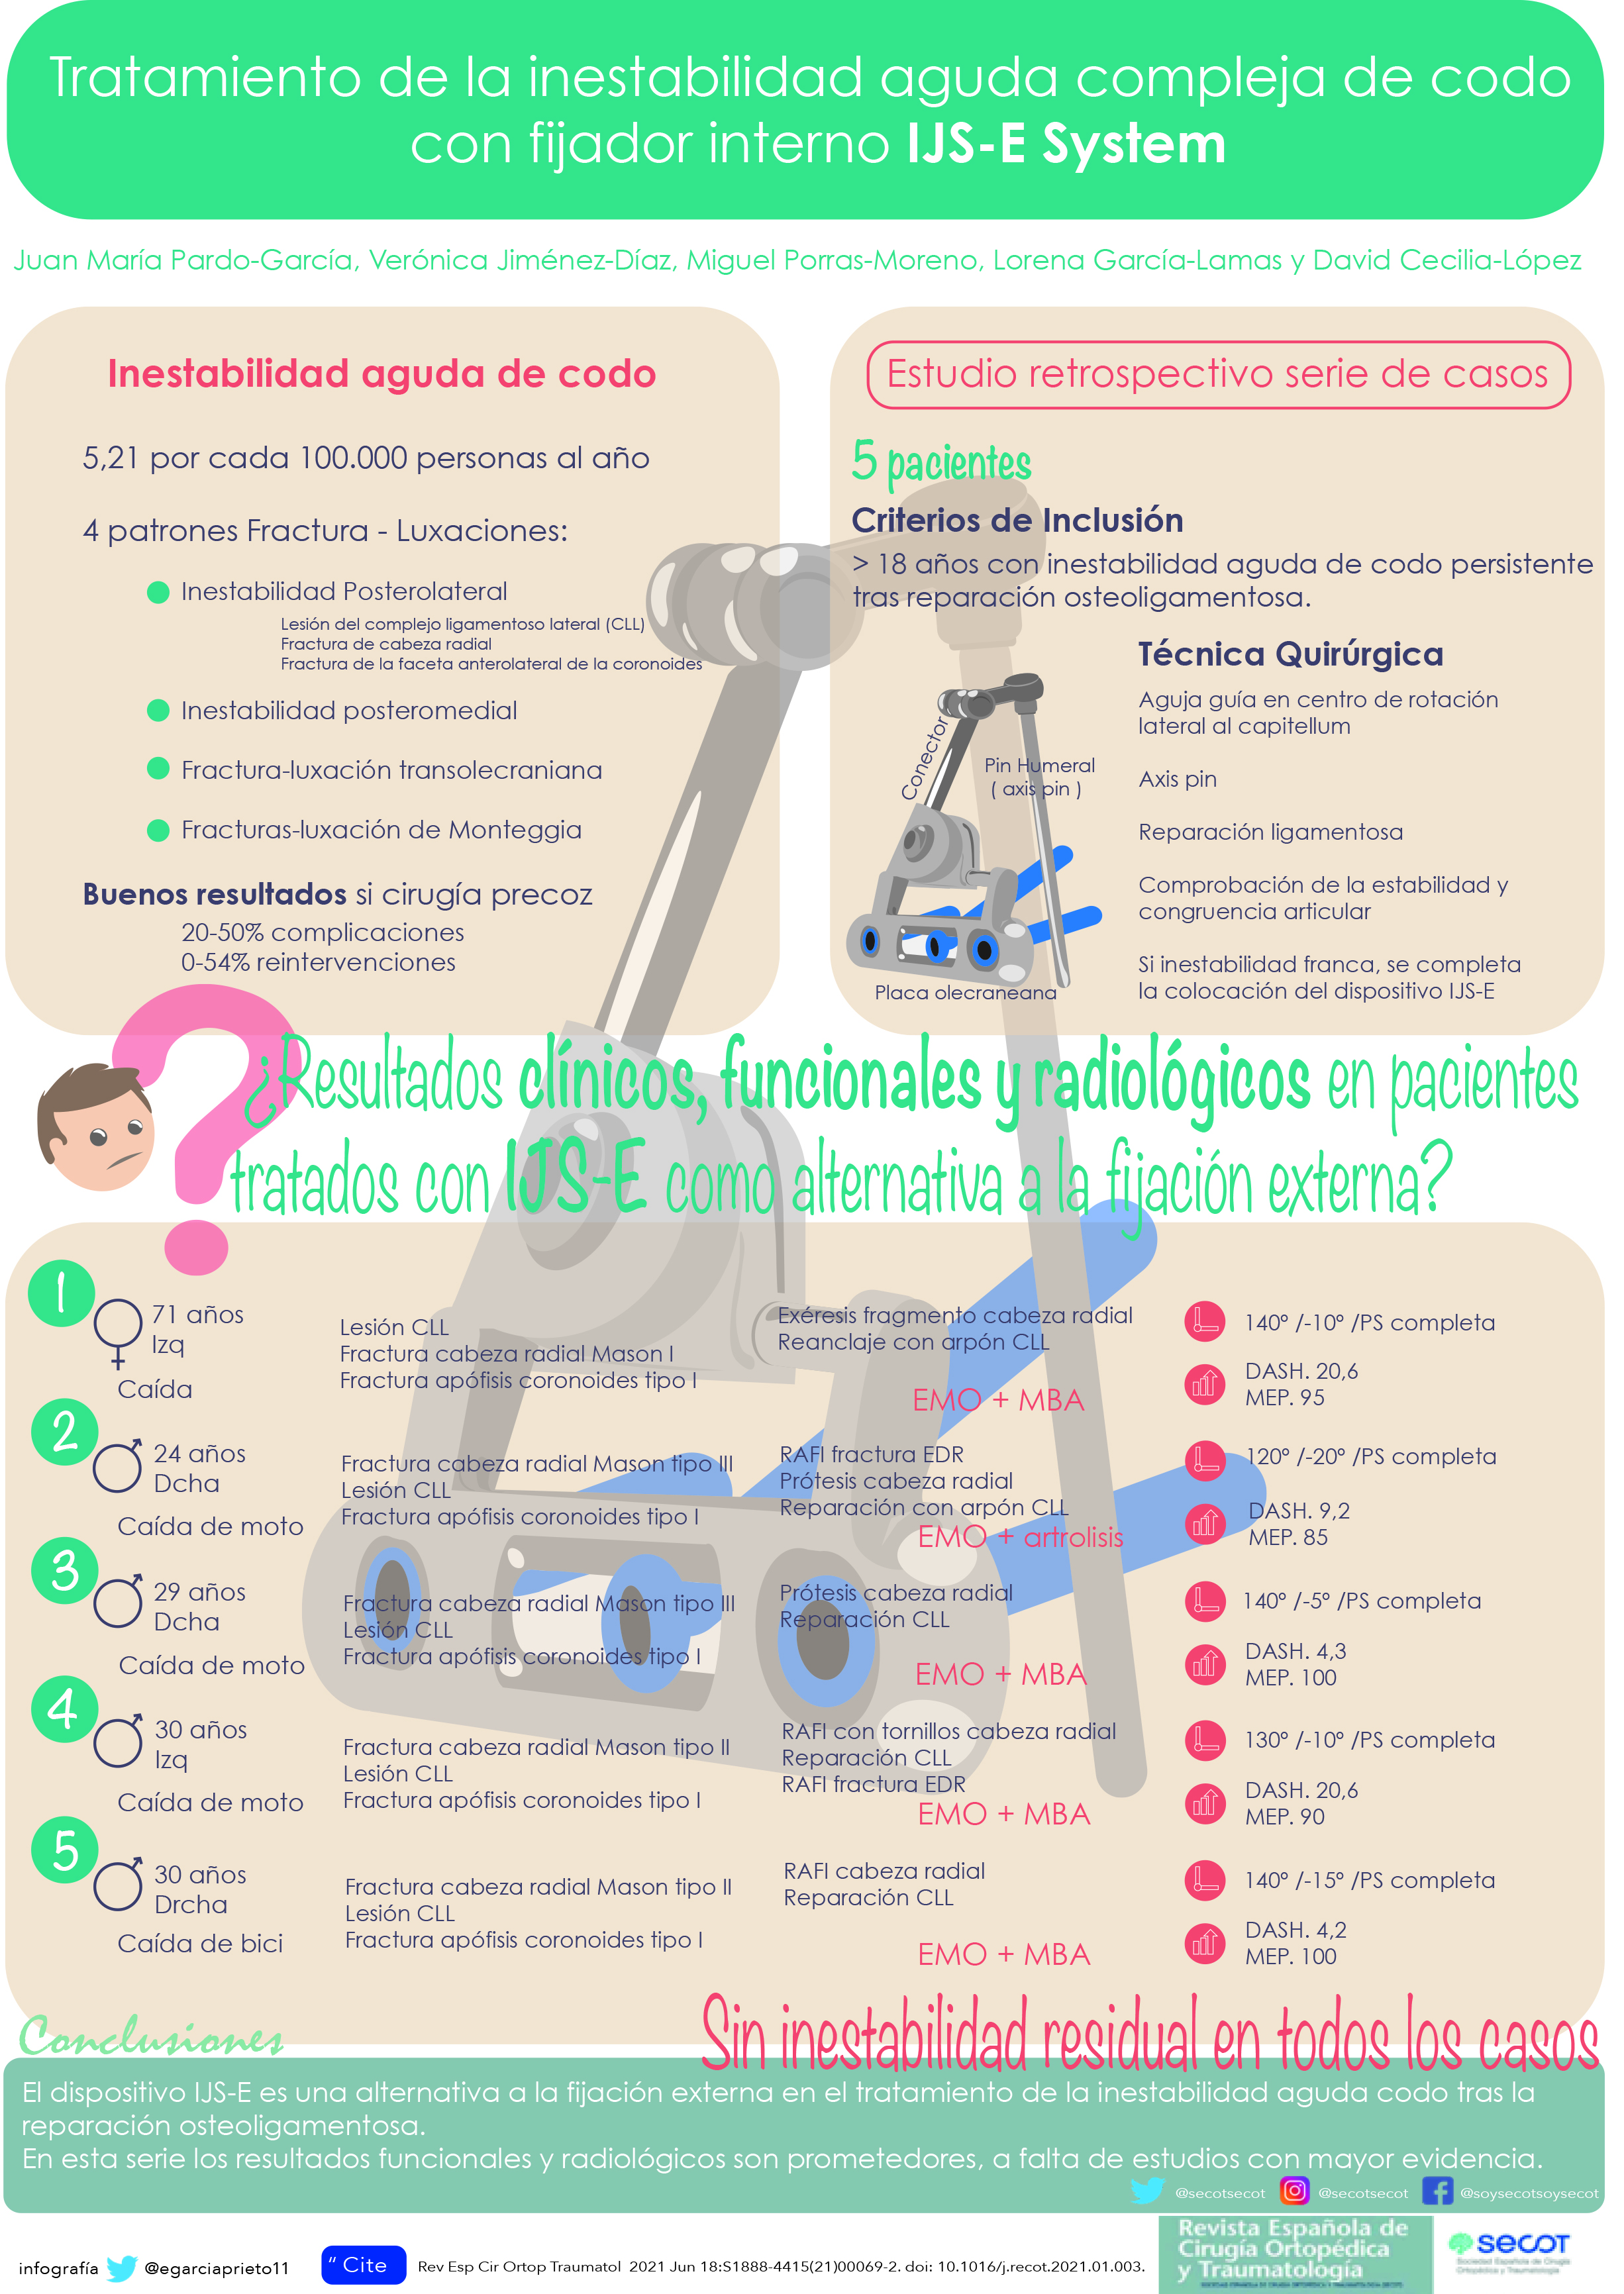 Tratamiento de la inestabilidad aguda compleja de codo con fijador interno IJS-E System | Revista Española de Cirugía Ortopédica y Traumatología (elsevier.es)